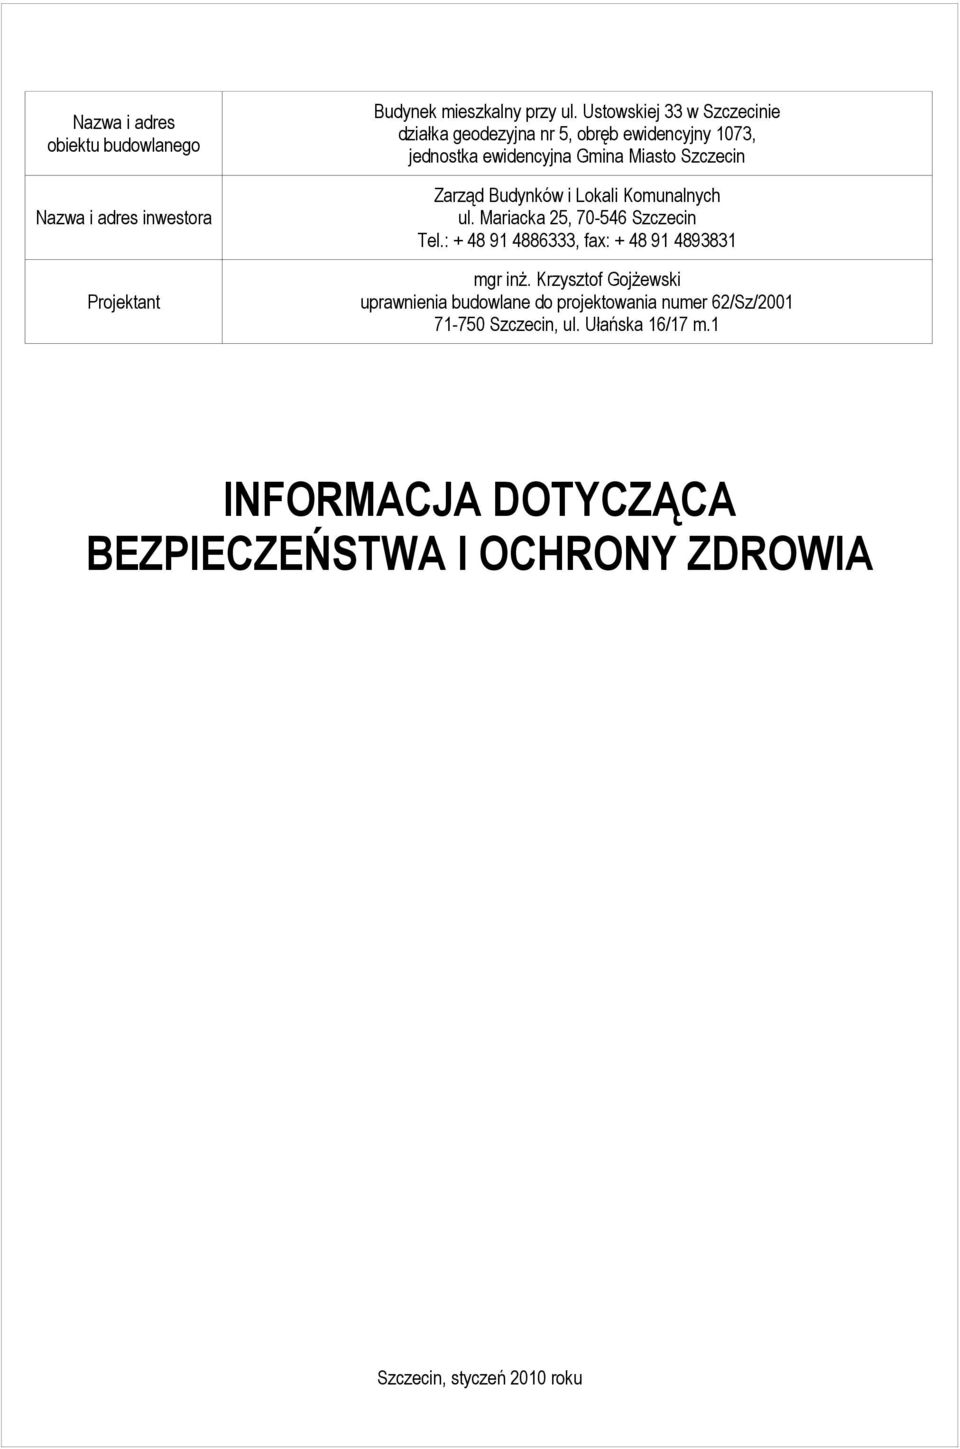 Budynków i Lokali Komunalnych ul. Mariacka 25, 70-546 Szczecin Tel.: + 48 91 4886333, fax: + 48 91 4893831 mgr inż.